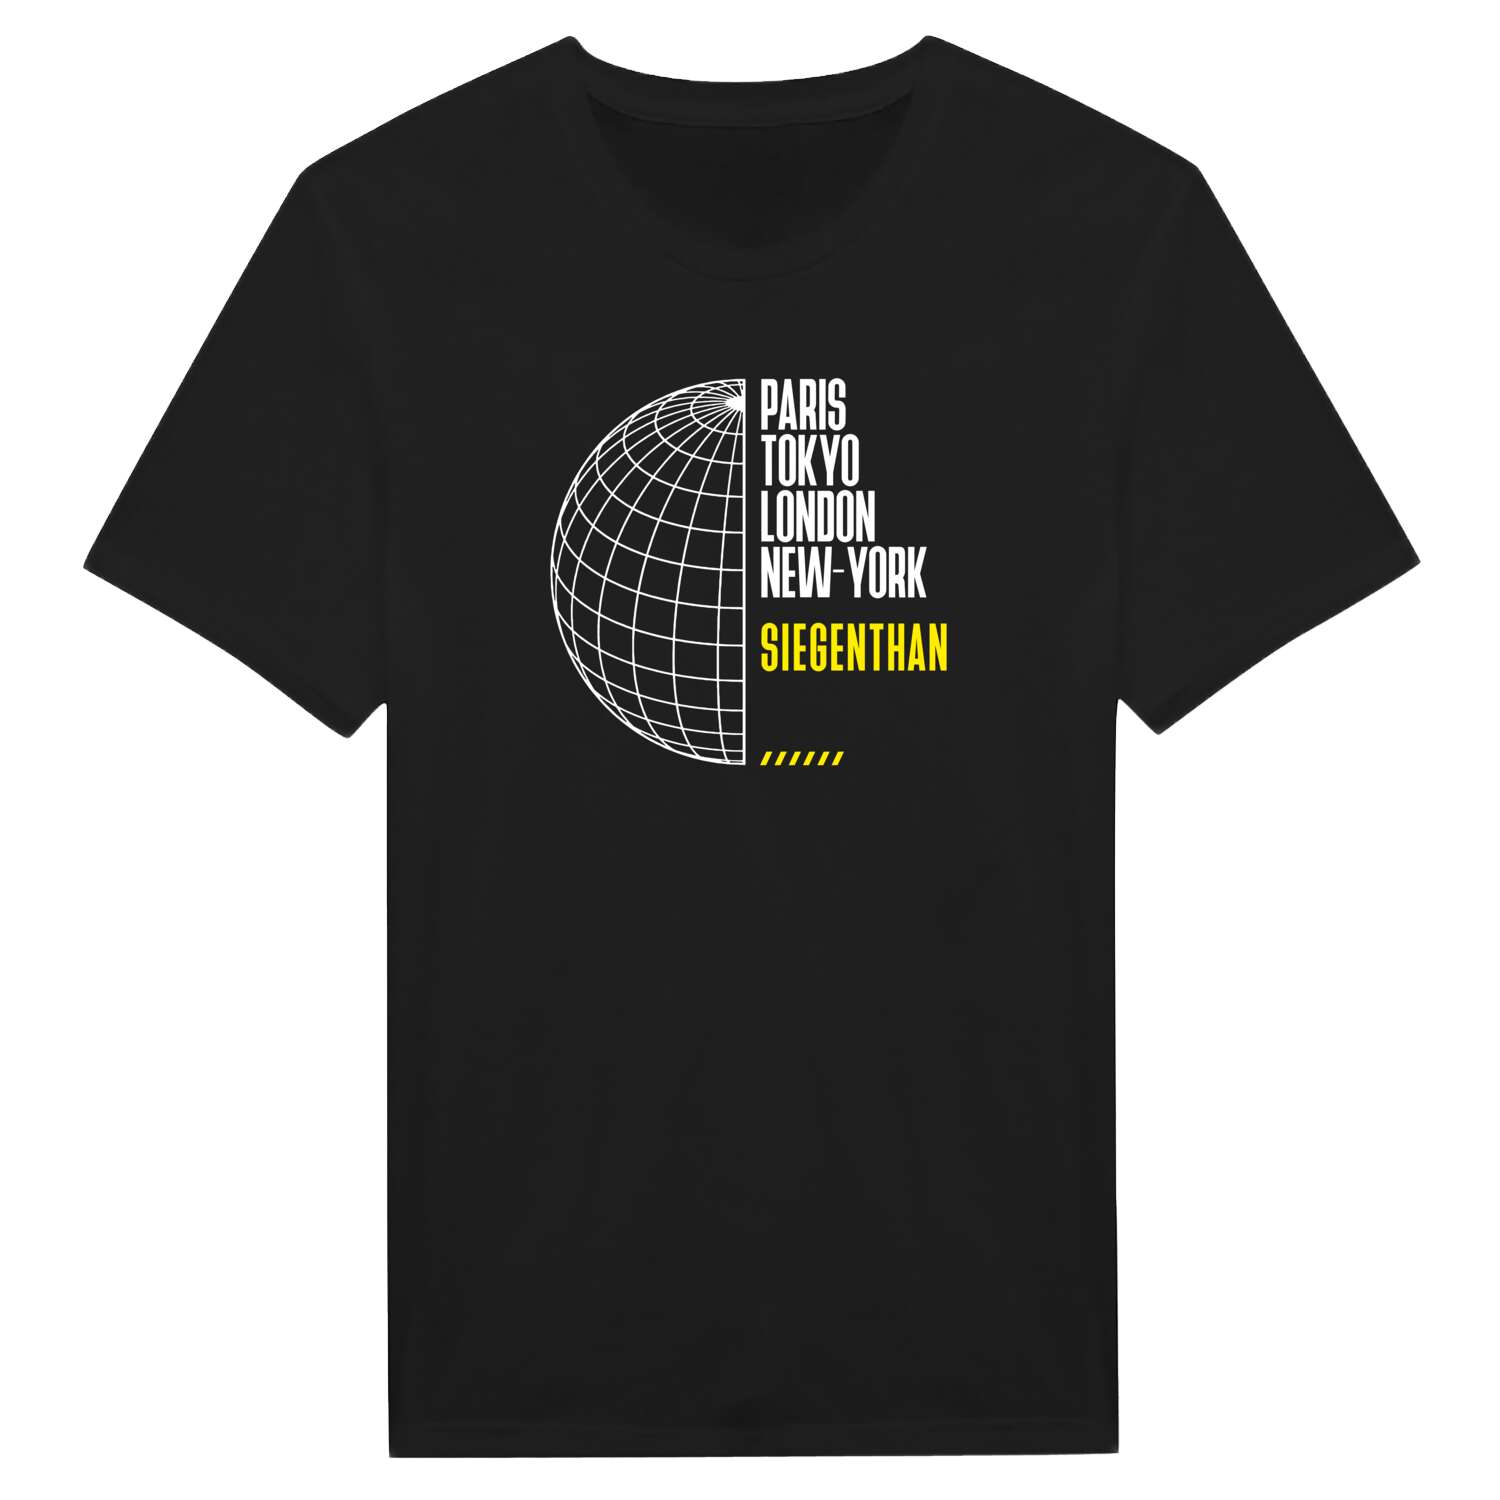 Siegenthan T-Shirt »Paris Tokyo London«